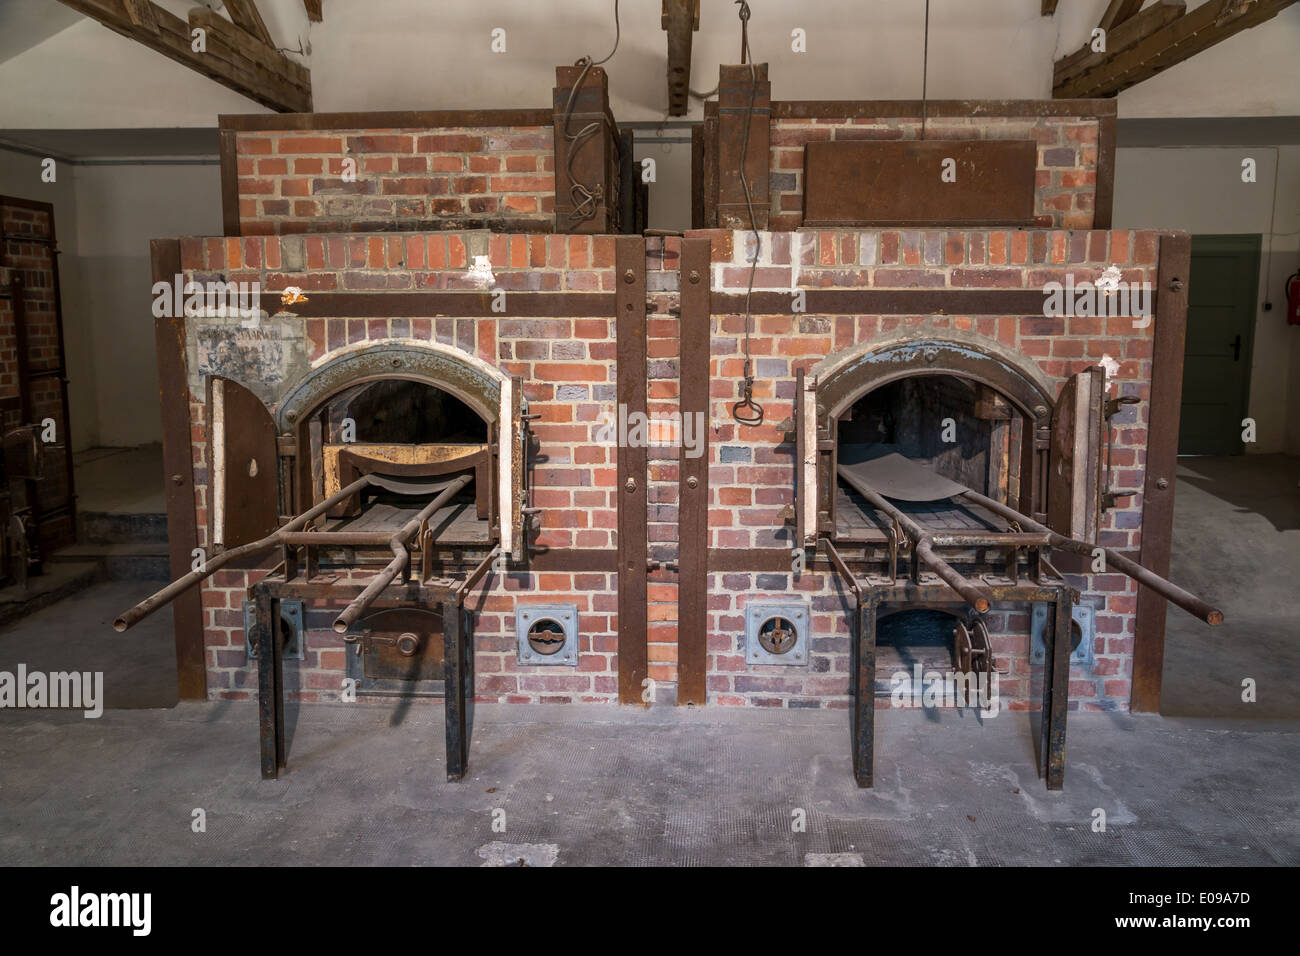 Dachau crematorium. Stock Photo